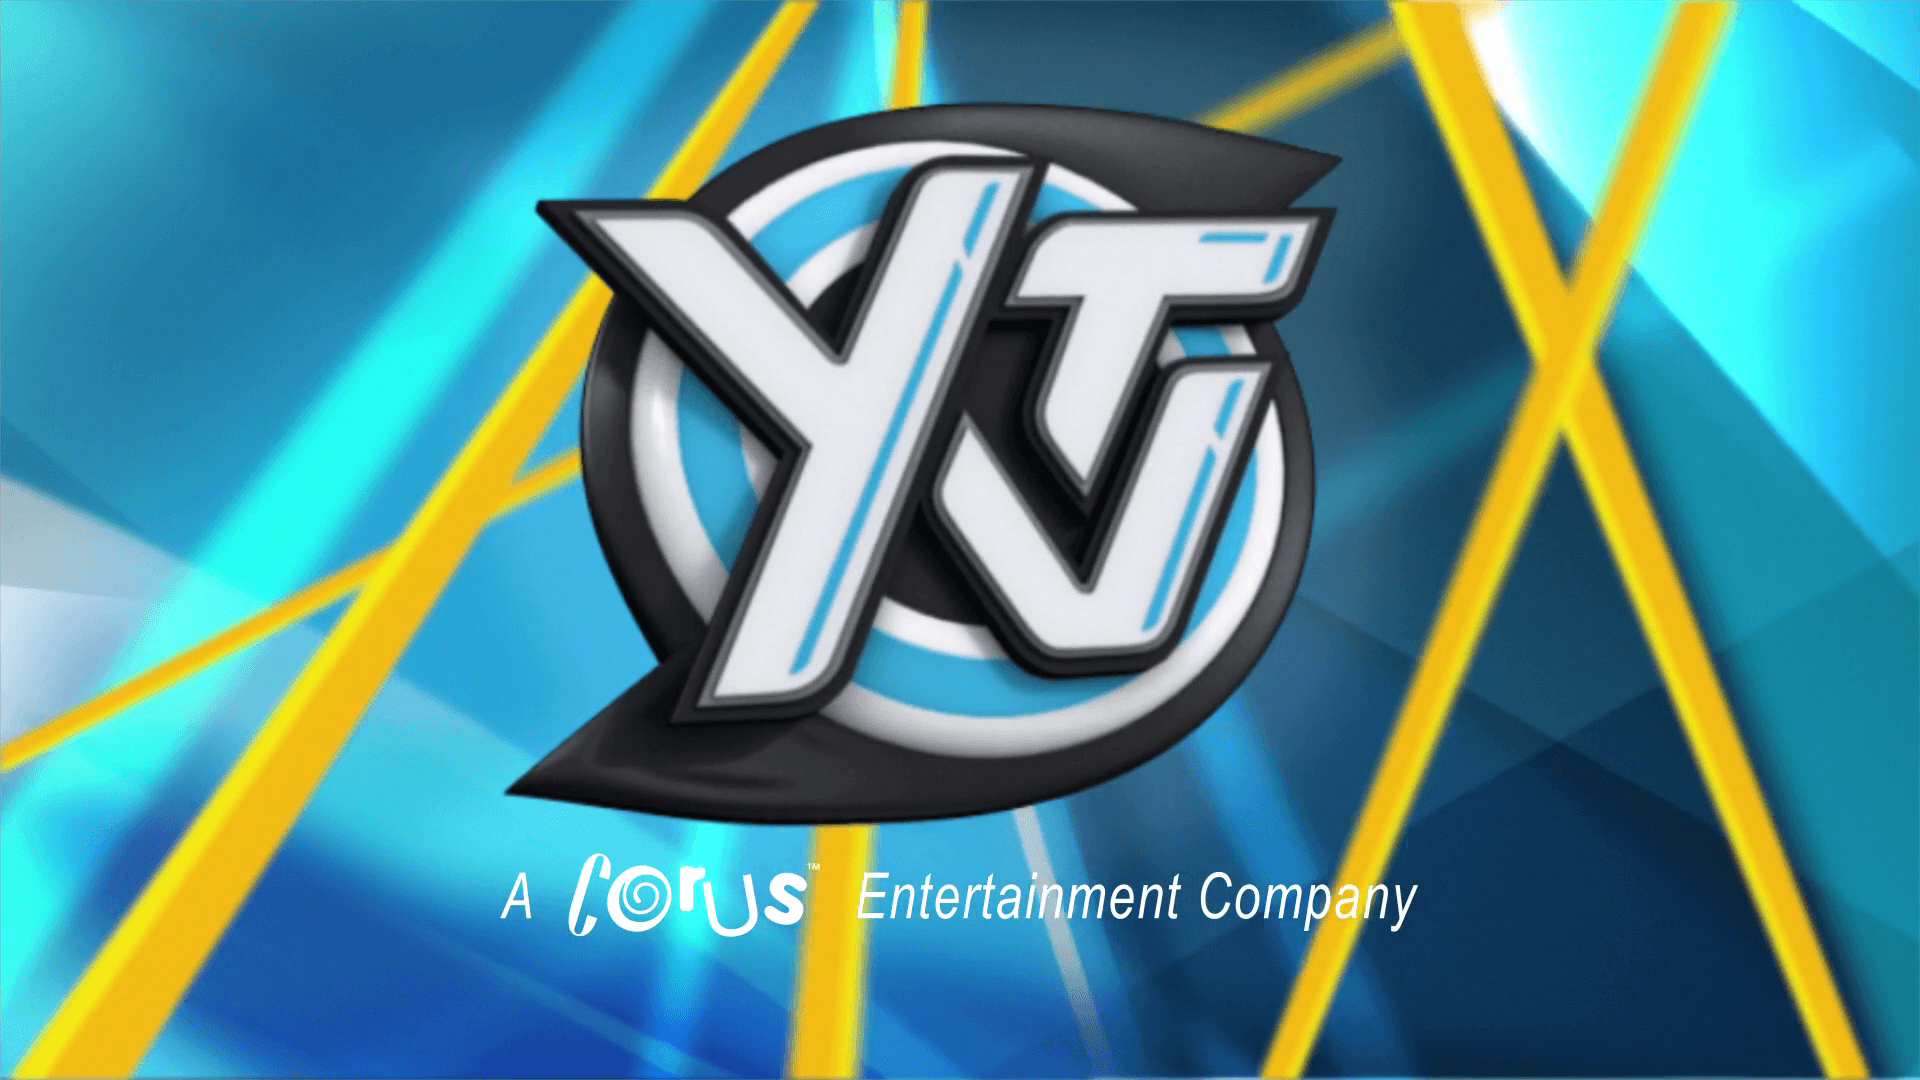 Ytv Logo - YTV Originals (Canada)